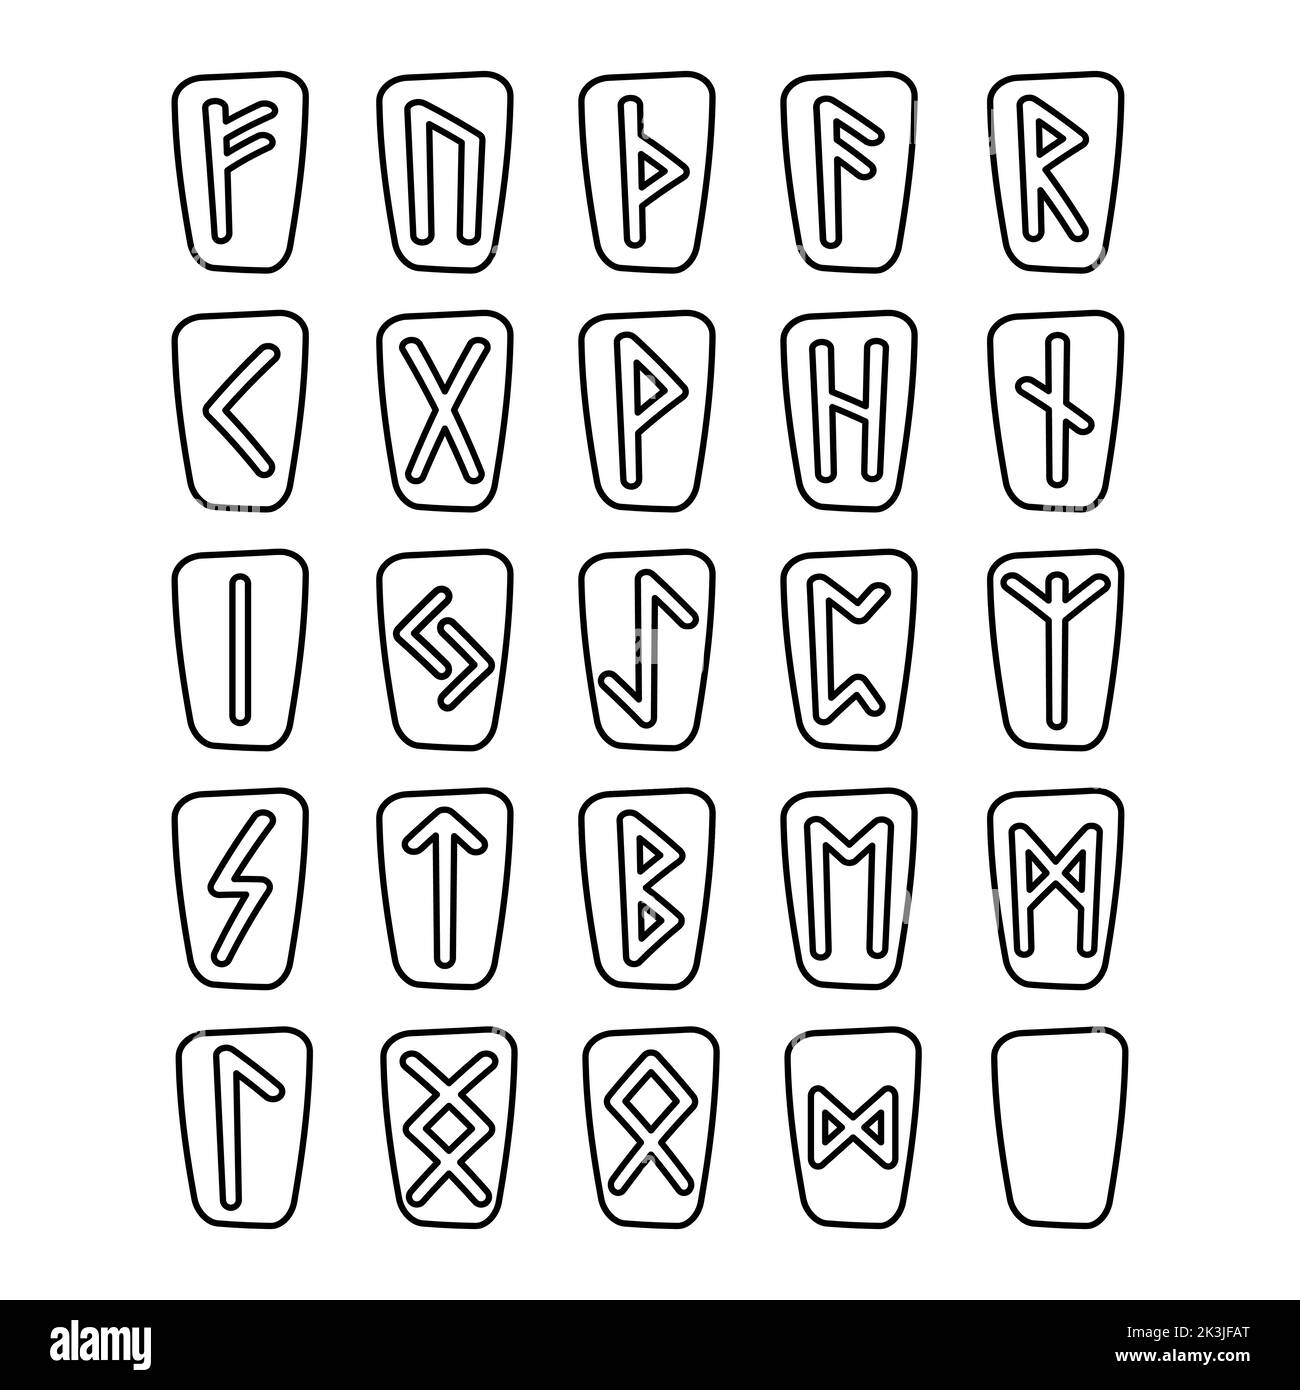 Runas Vikingas: El Diseño Vectorial Del Alfabeto Elder Futhark En Marco  Celta Ilustraciones svg, vectoriales, clip art vectorizado libre de  derechos. Image 148567588